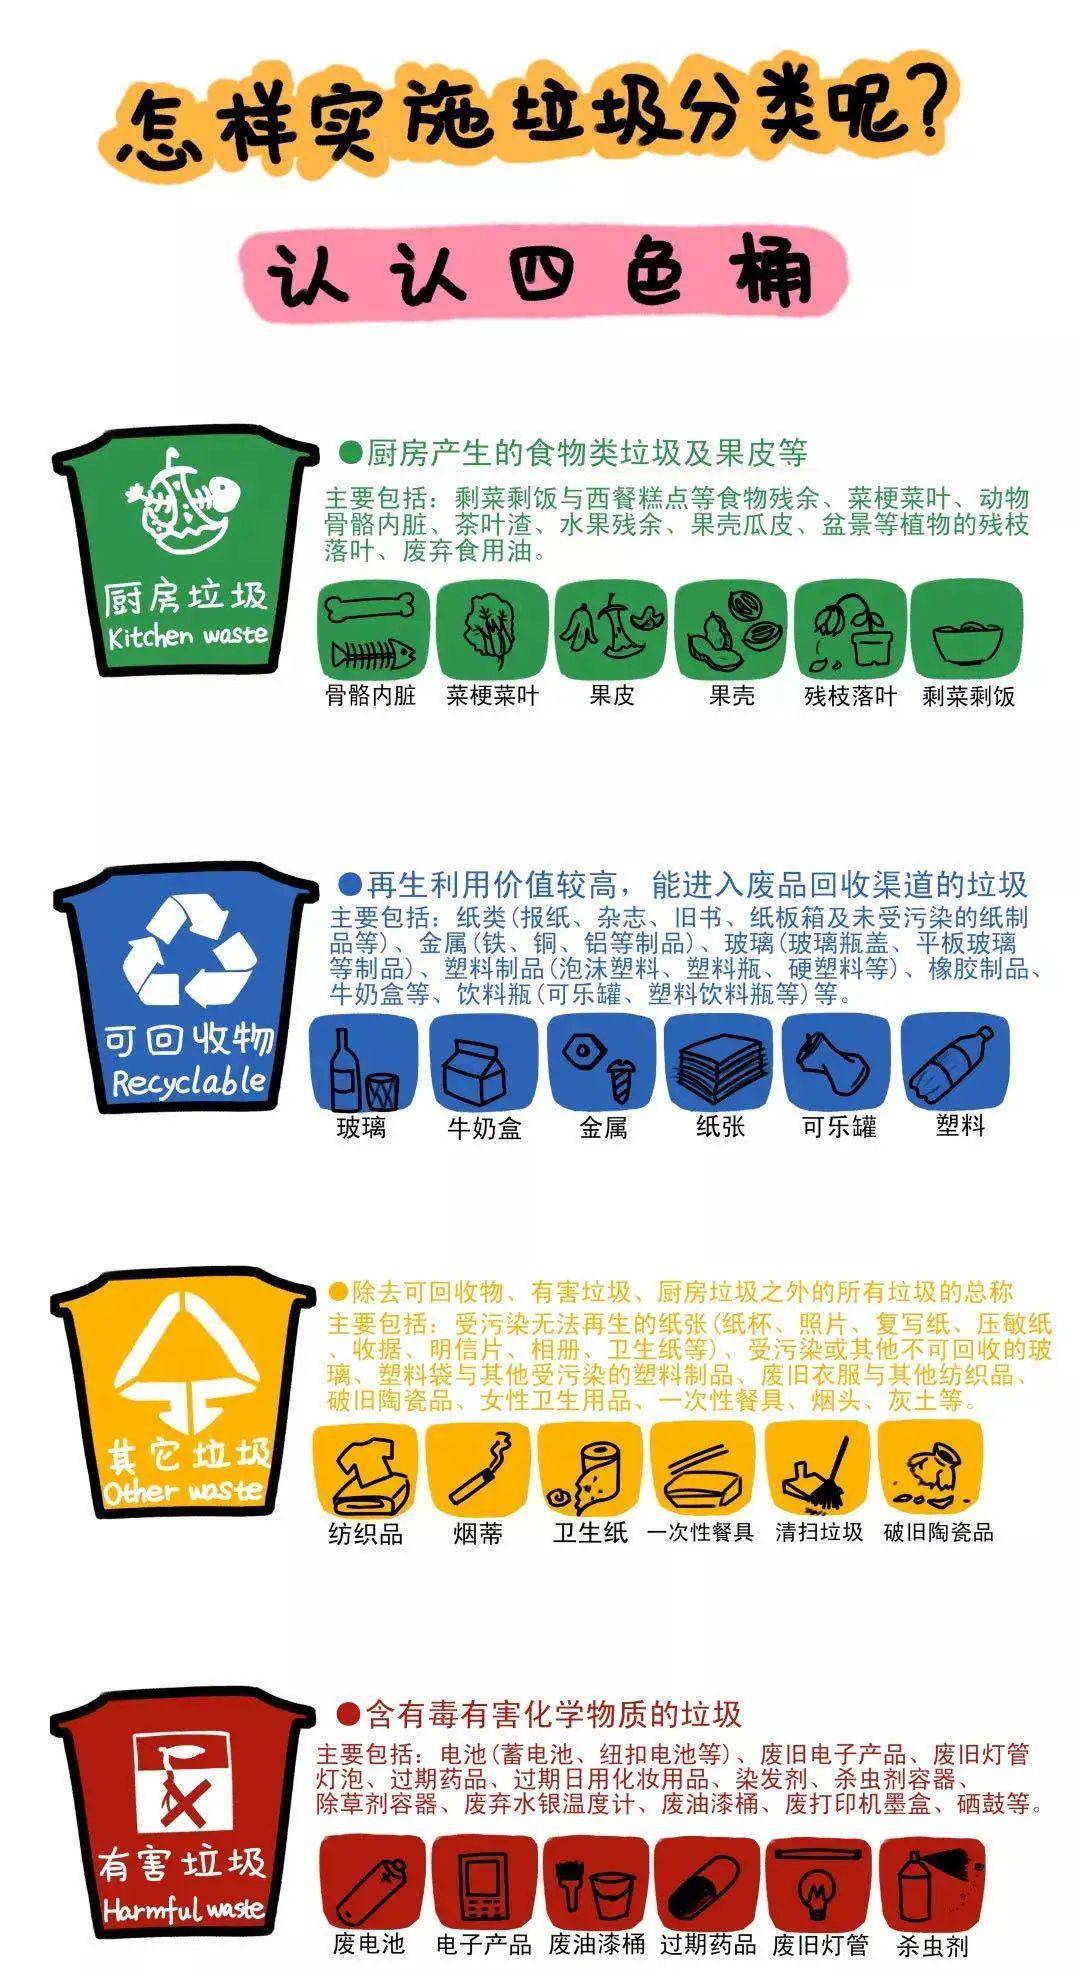 那么,如何进行垃圾分类呢?大部分城市采用了"垃圾四色桶"的方式.